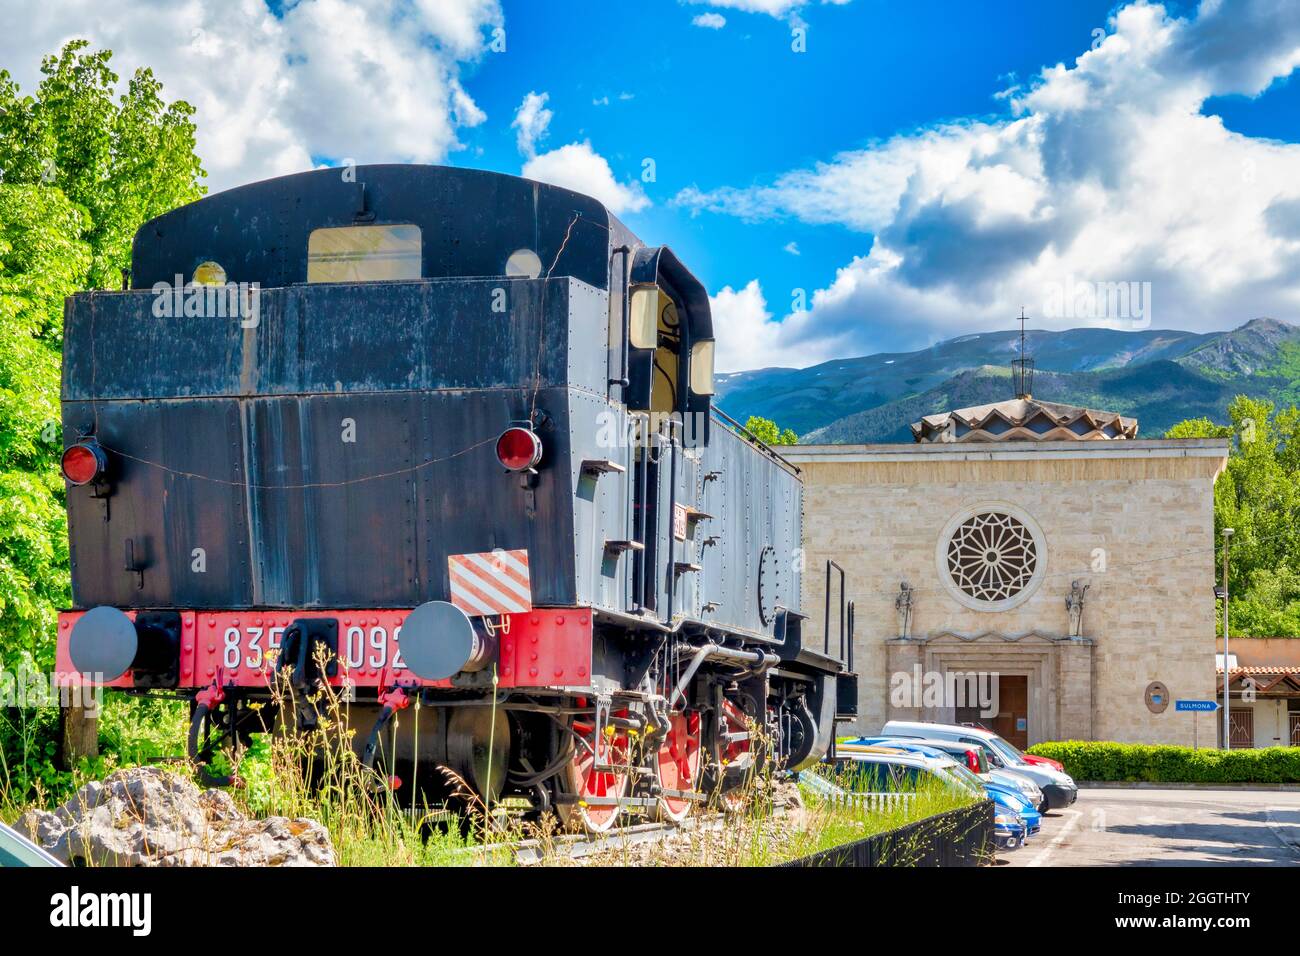 Locomotive à vapeur 835.092 de la 'Ferrovie dello Stato' devant l'église de la 'Madonna Pellegrina, Sulmona, Italie Banque D'Images